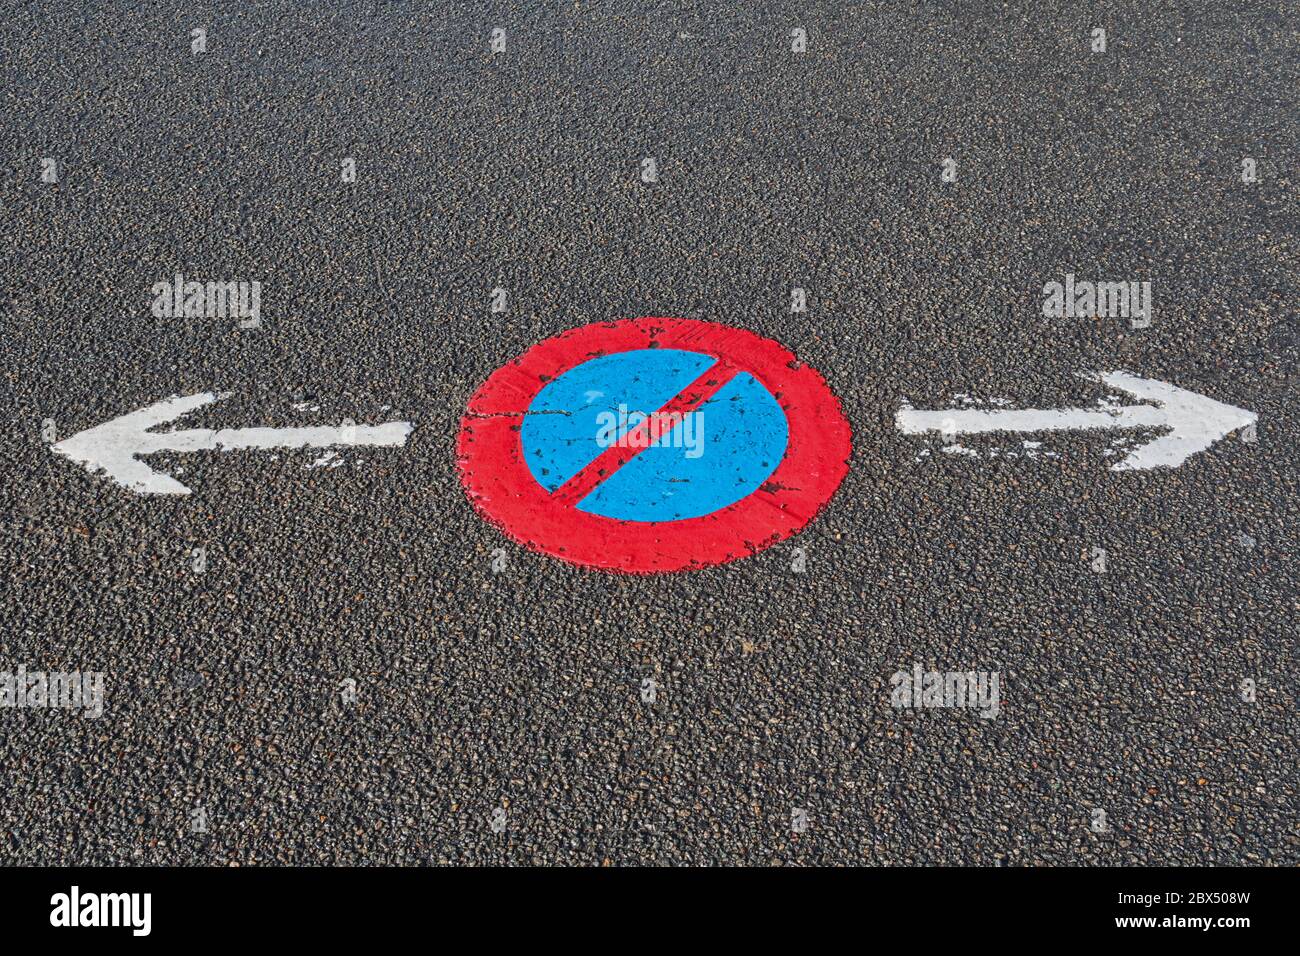 Kein Stoppschild mit einem Pfeil auf beiden Seiten, der dem Fahrer die Wahl der zugelassenen Richtungen anzeigt. Stockfoto